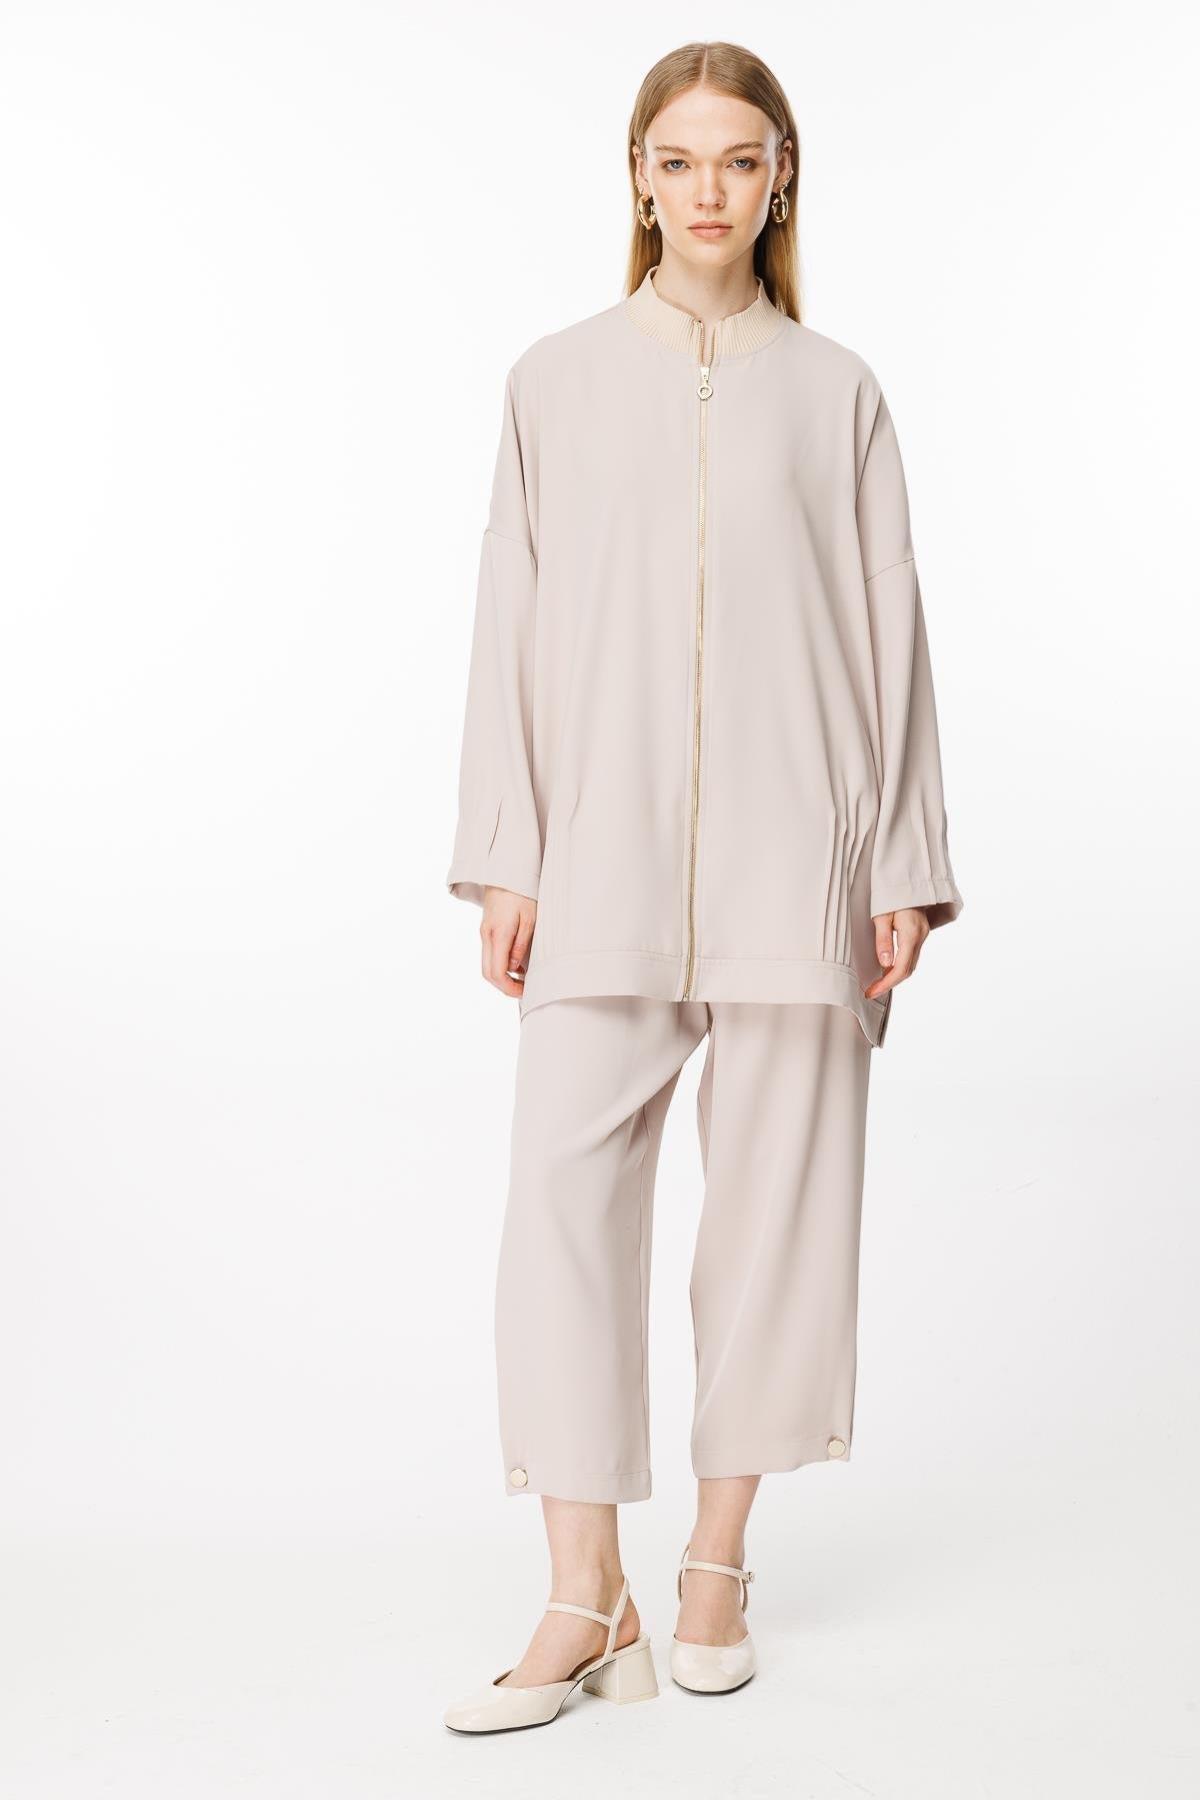 Fermuarlı Tunik Pantolon Takım - Eser Giyim